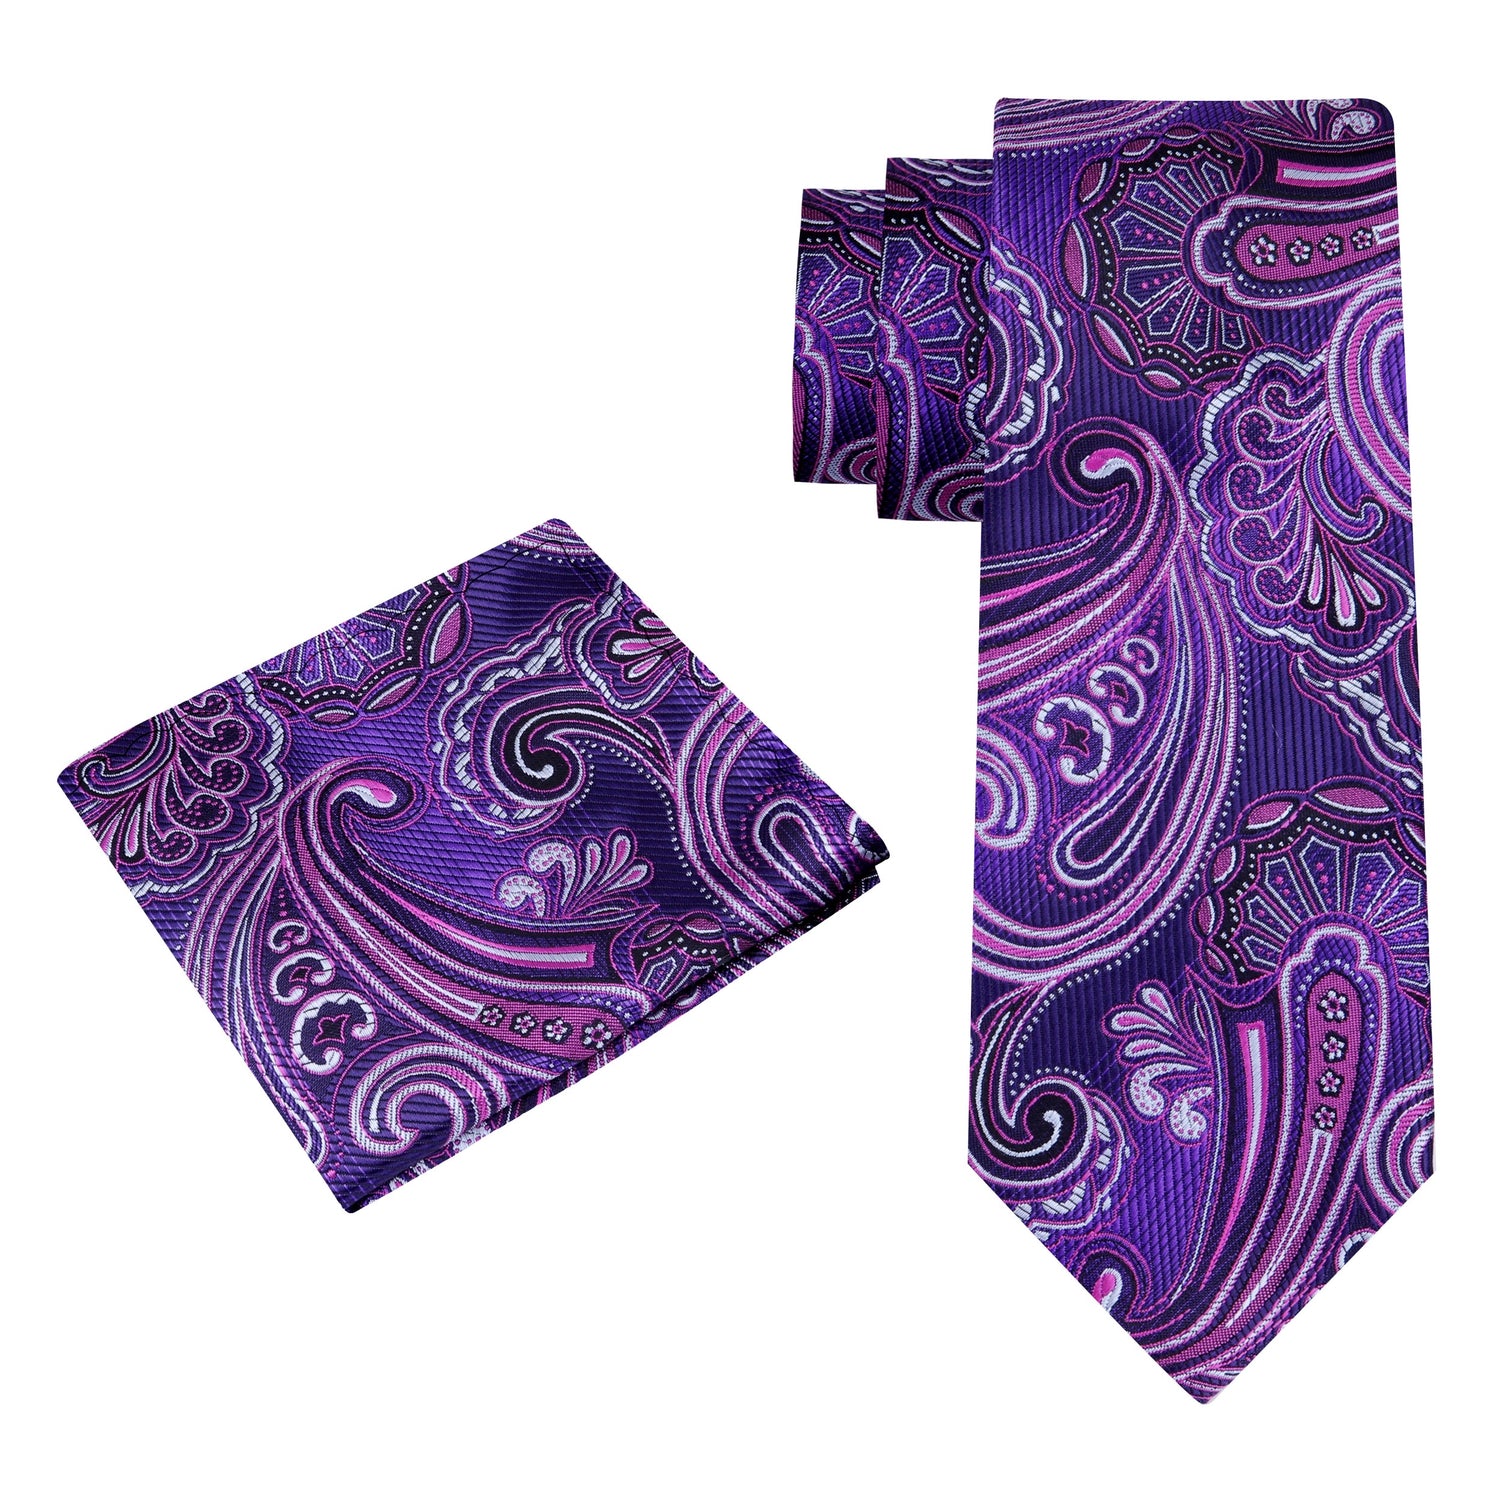 Alt View: A Purple, Dark Purple Paisley Pattern Silk Necktie, Matching Silk Pocket Square